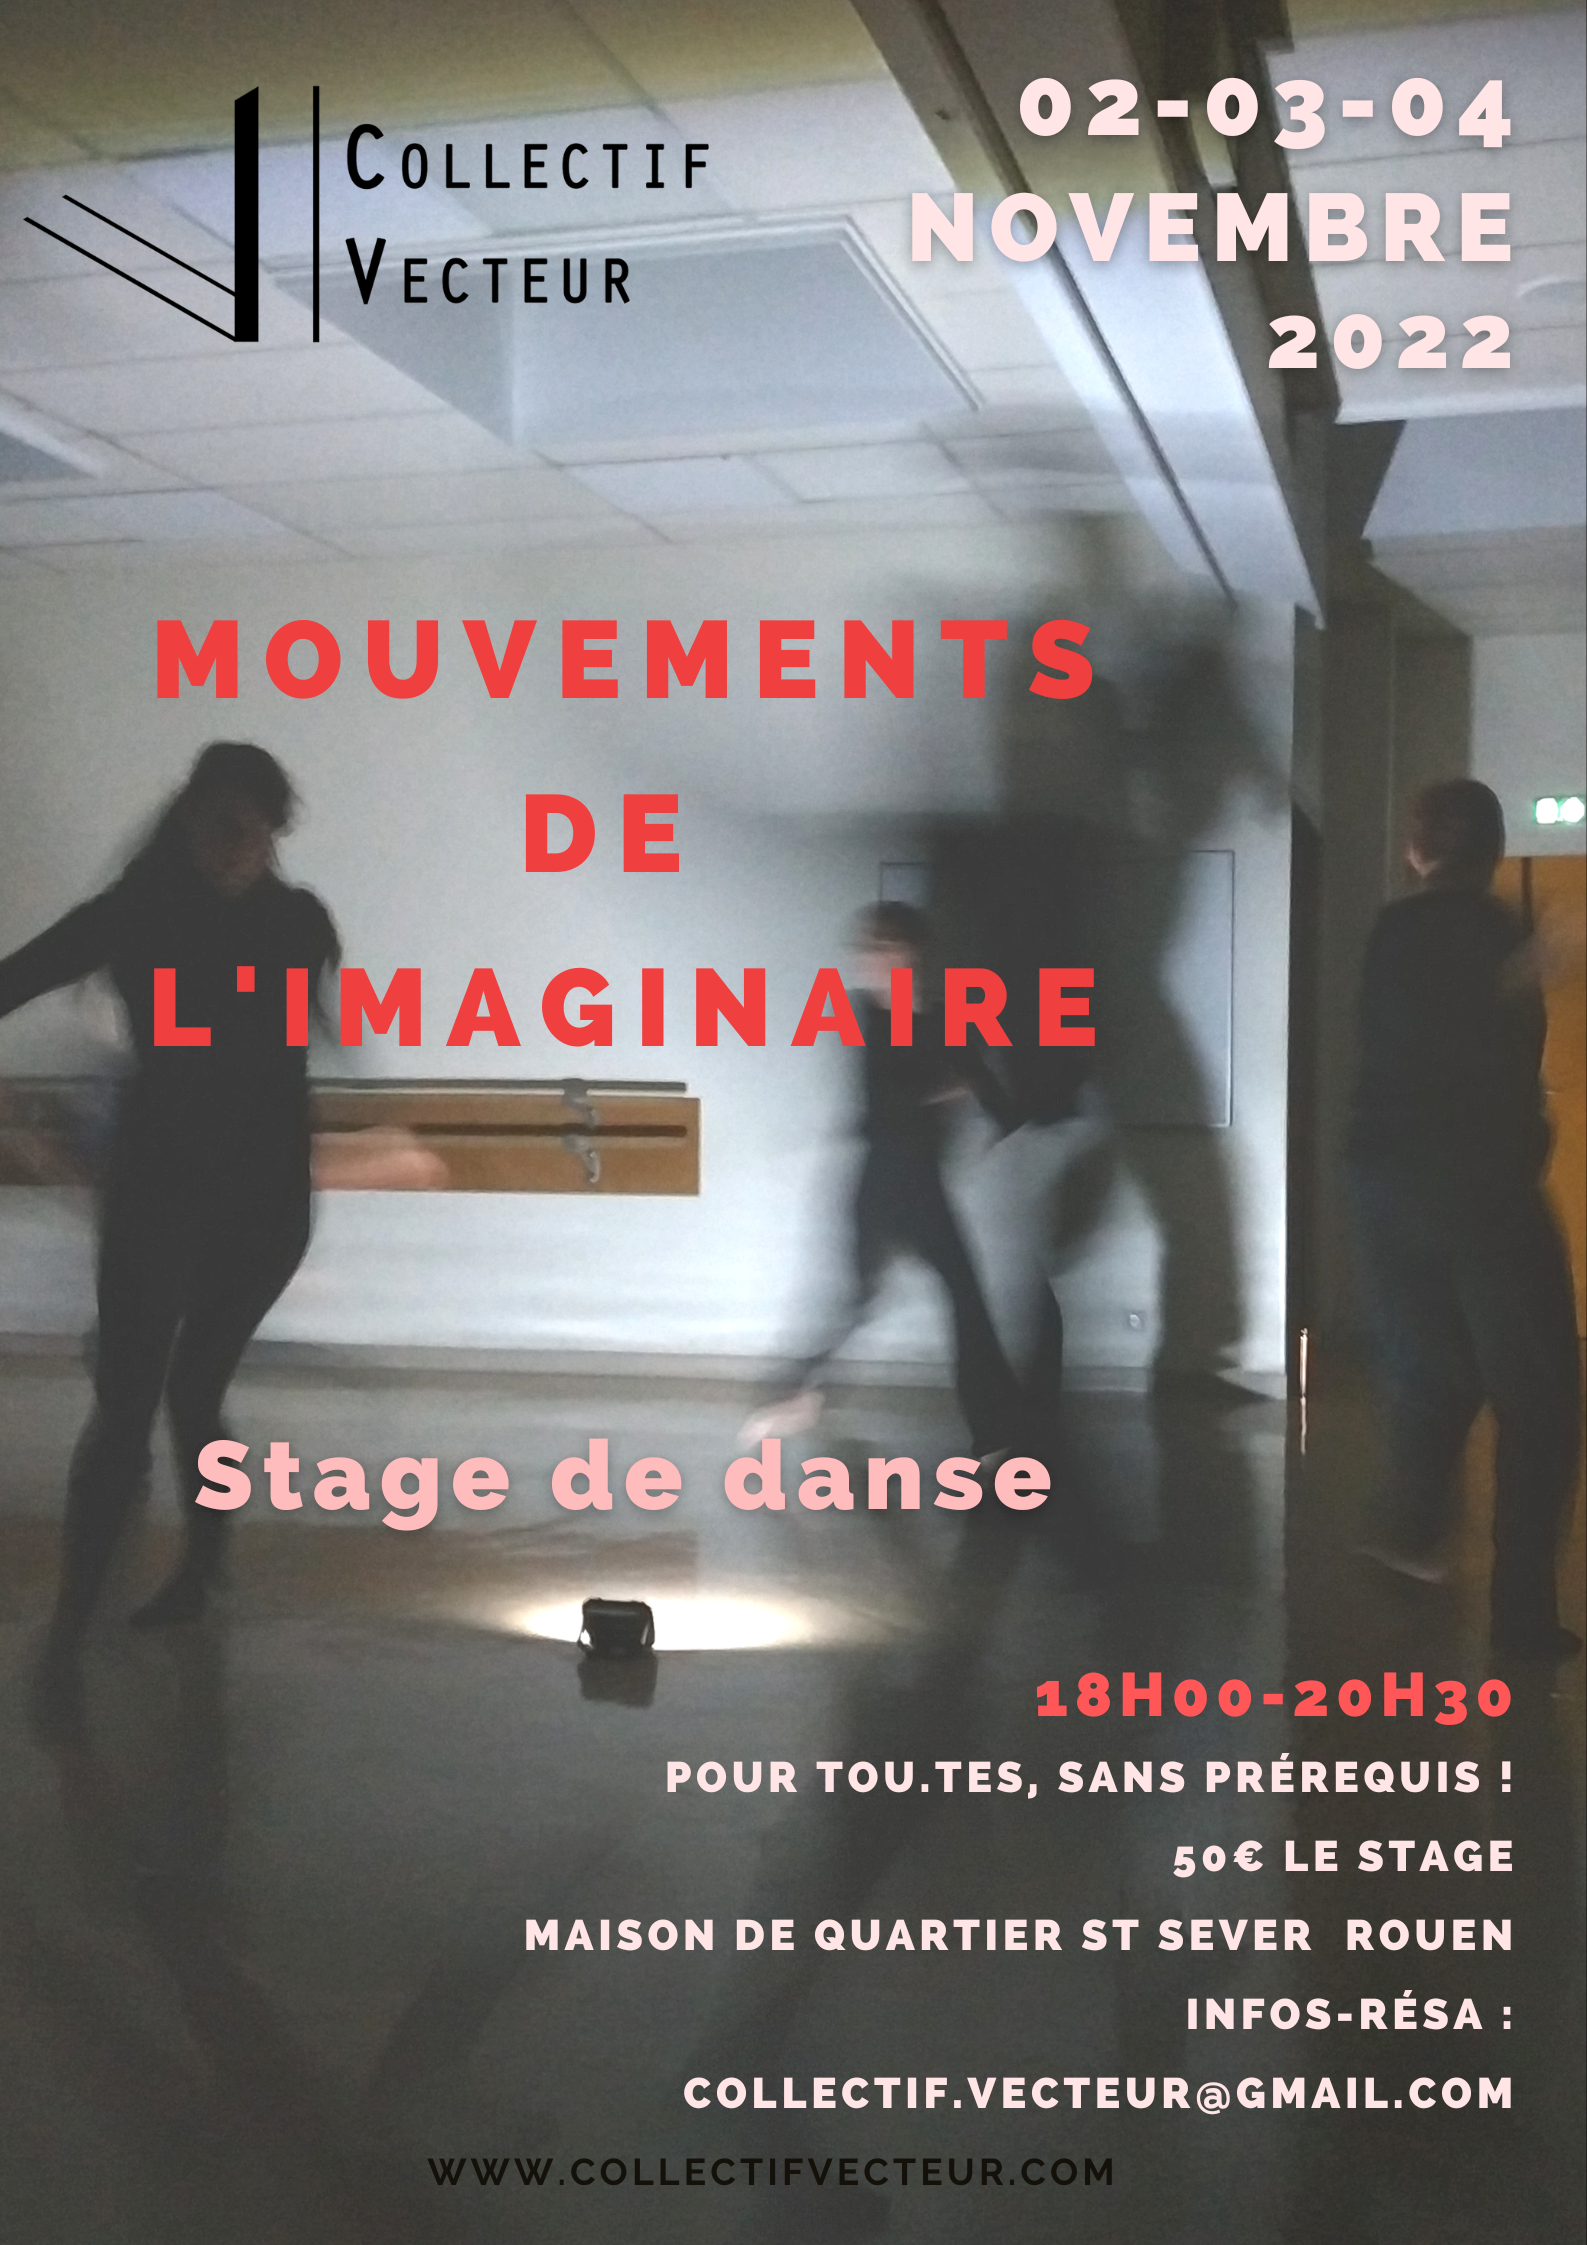 stage danse mouvements de imaginaire Collectif Vecteur Rouen